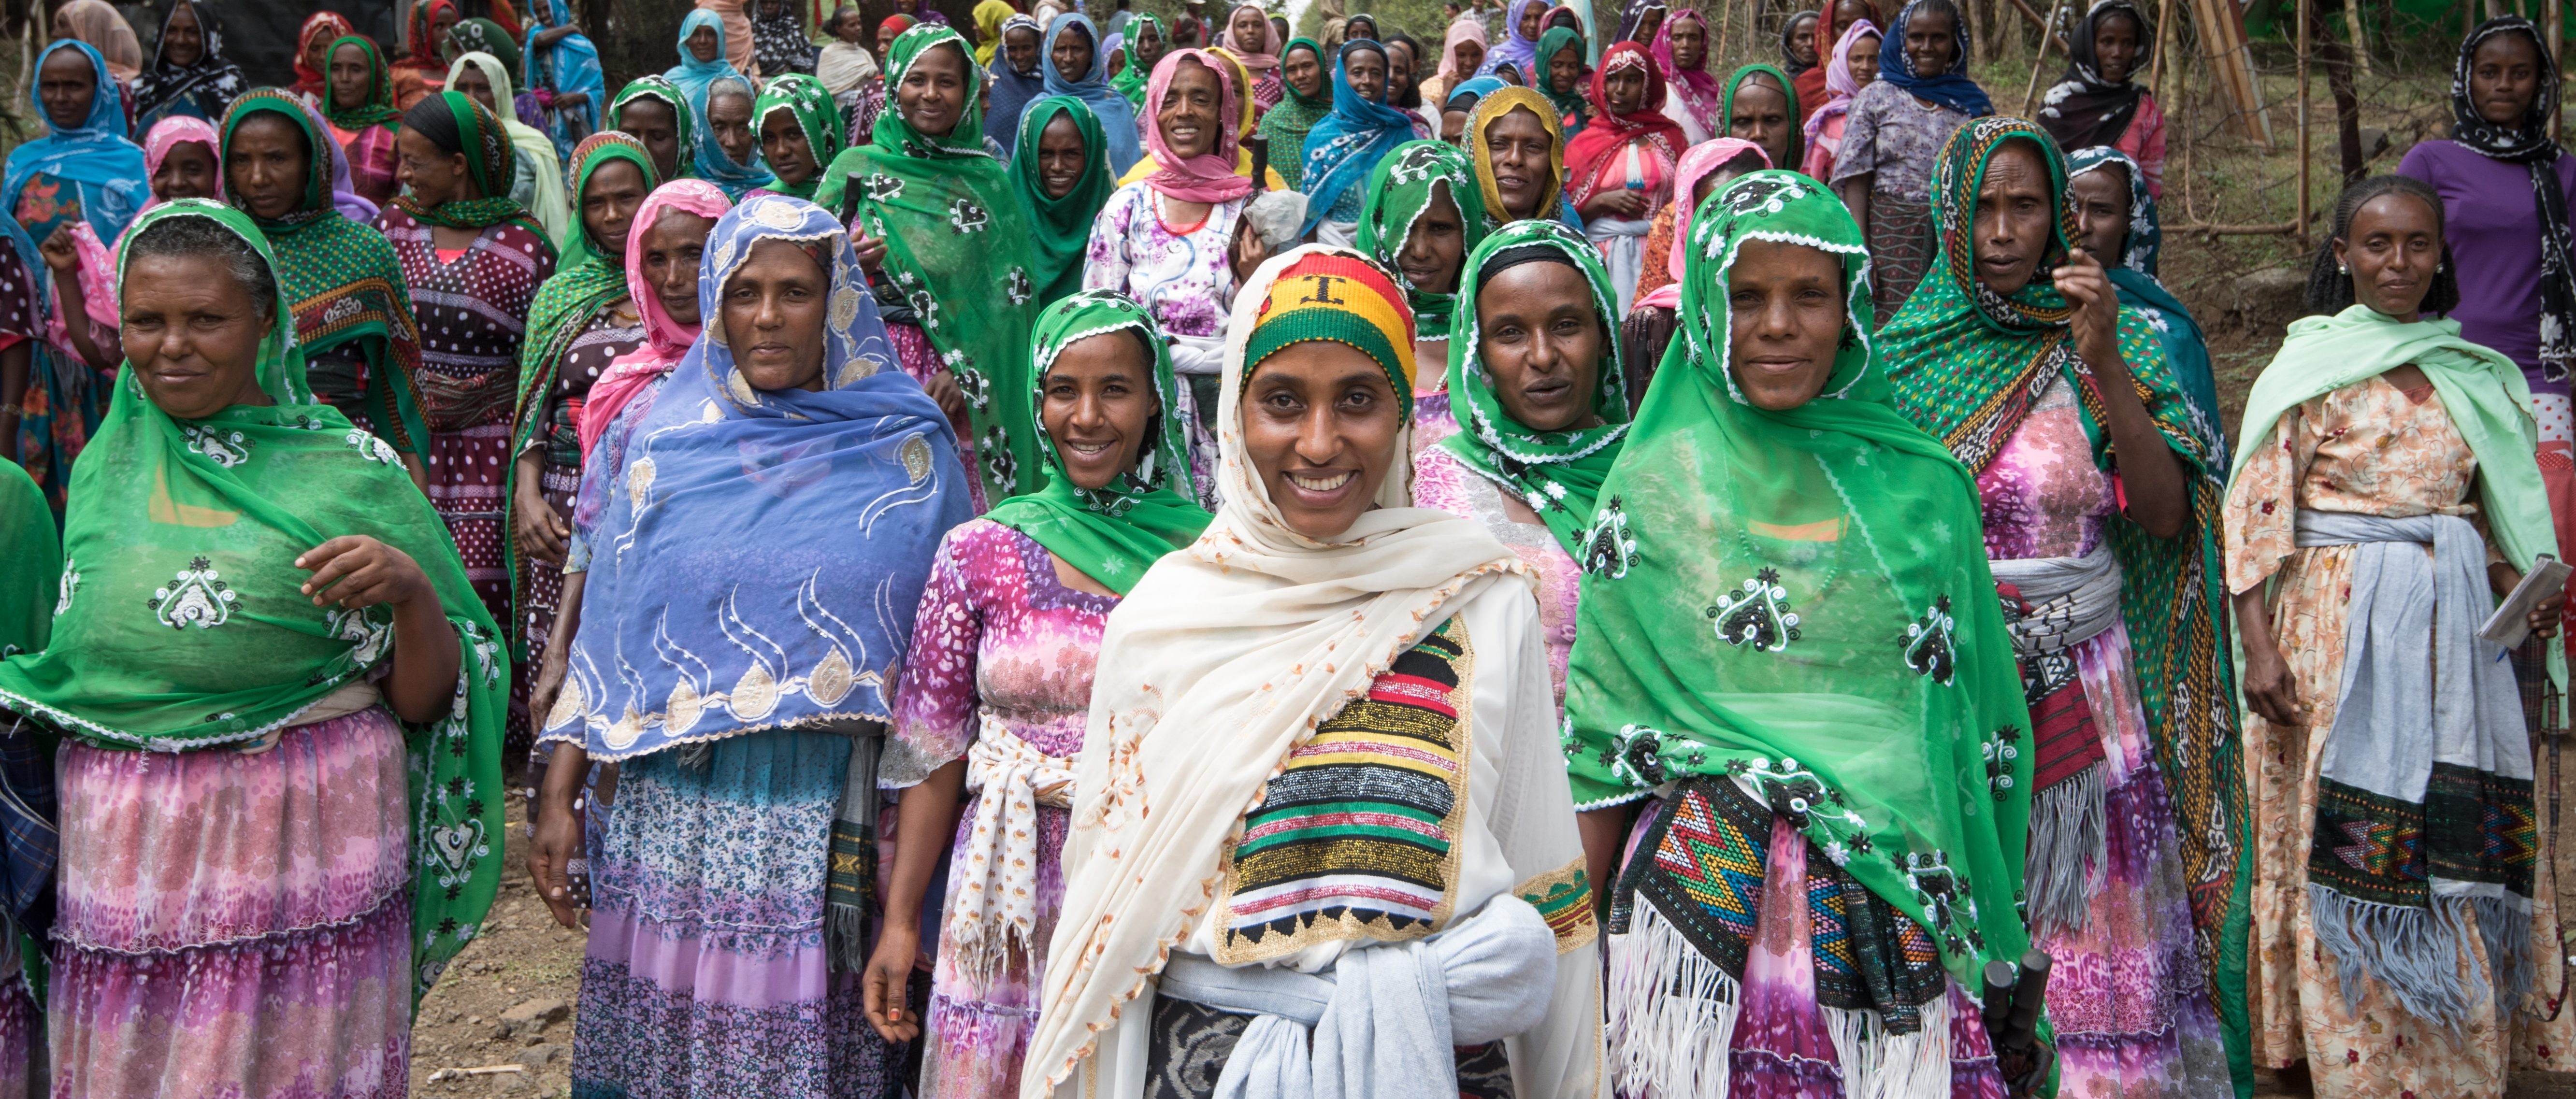 Etiopialaiset iloiset naiset värikkäissä vaatteissaan kulkevat pölyisellä maantiellä. Tiellä on kymmeniä naisia.